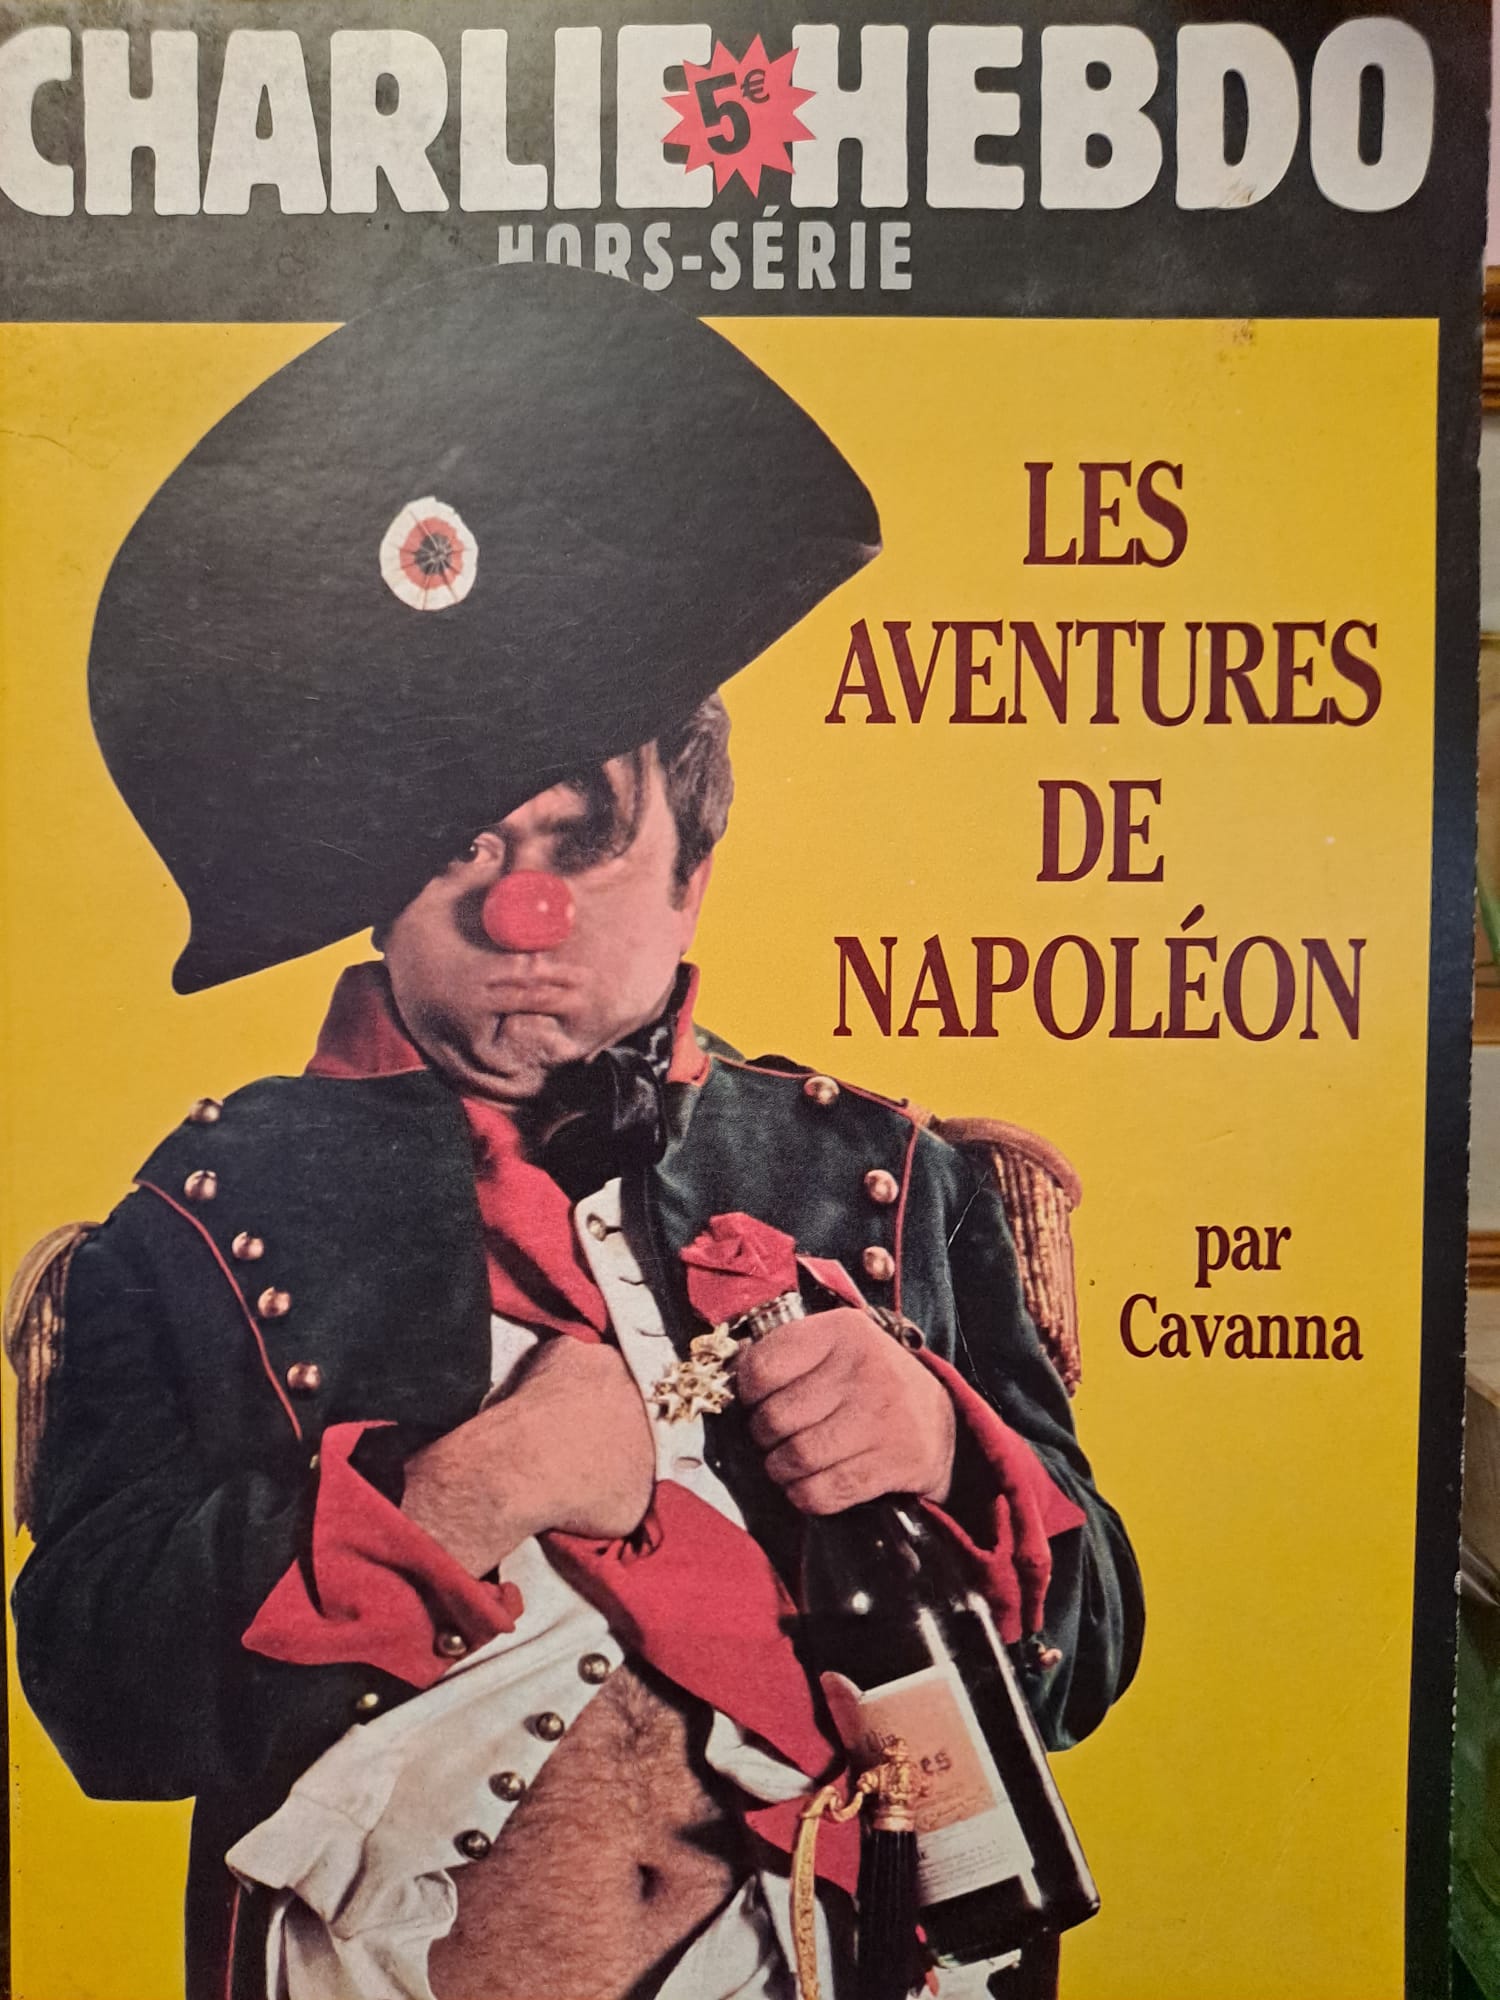 Un numero speciale di Charlie Hebdo del 2002 dedicato a Napoleone disegnato da Francois Cavanna, uno dei fondatori del giornale.